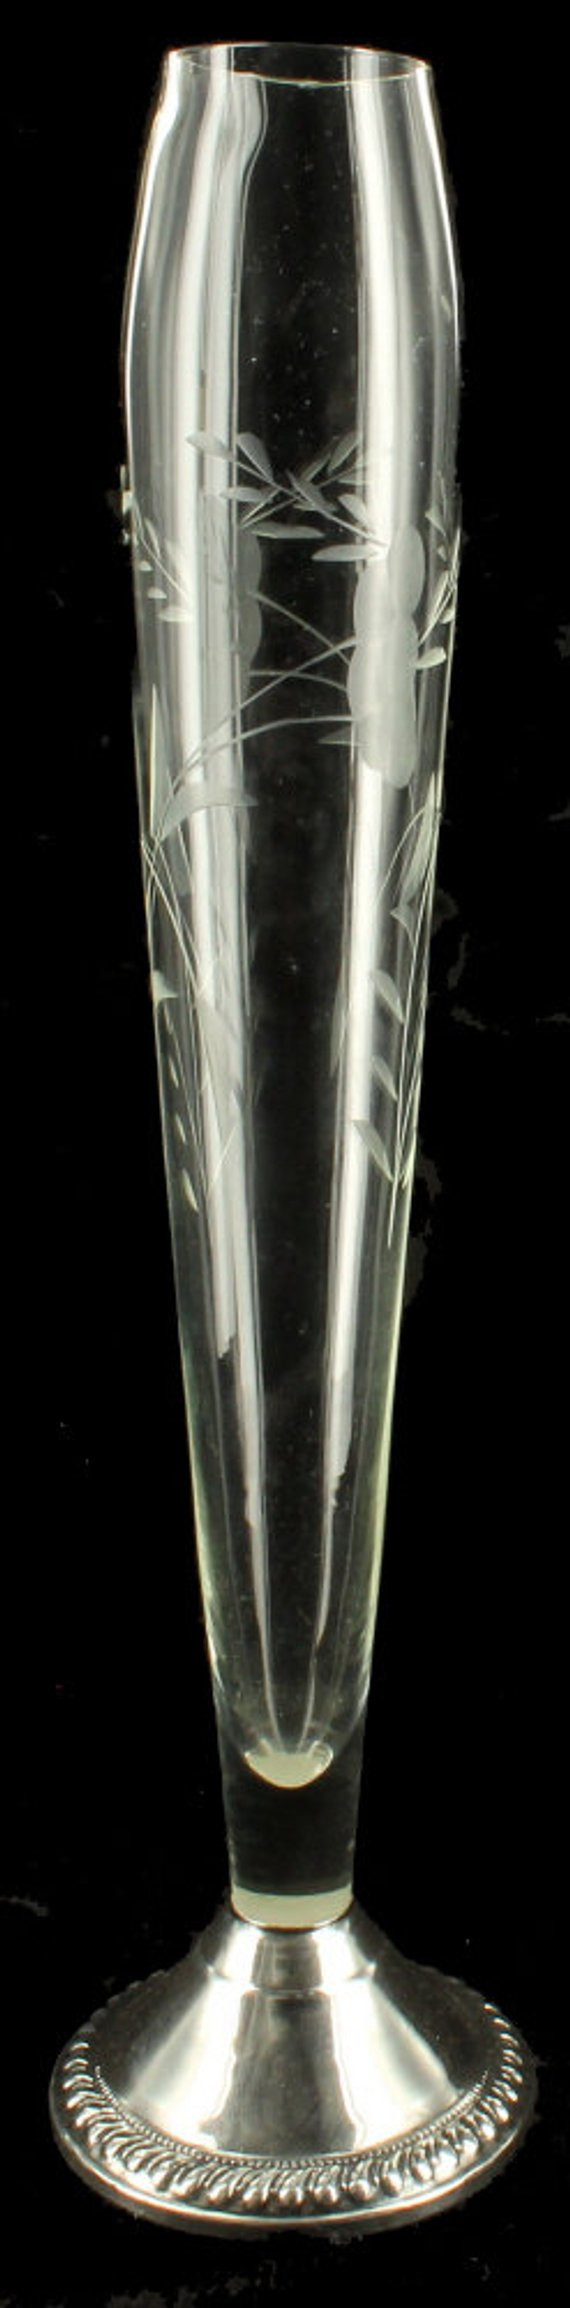 24 Elegant Antique Sterling Silver Bud Vase 2024 free download antique sterling silver bud vase of vintage art deco etched glass sterling silver base bud vase etsy throughout image 0